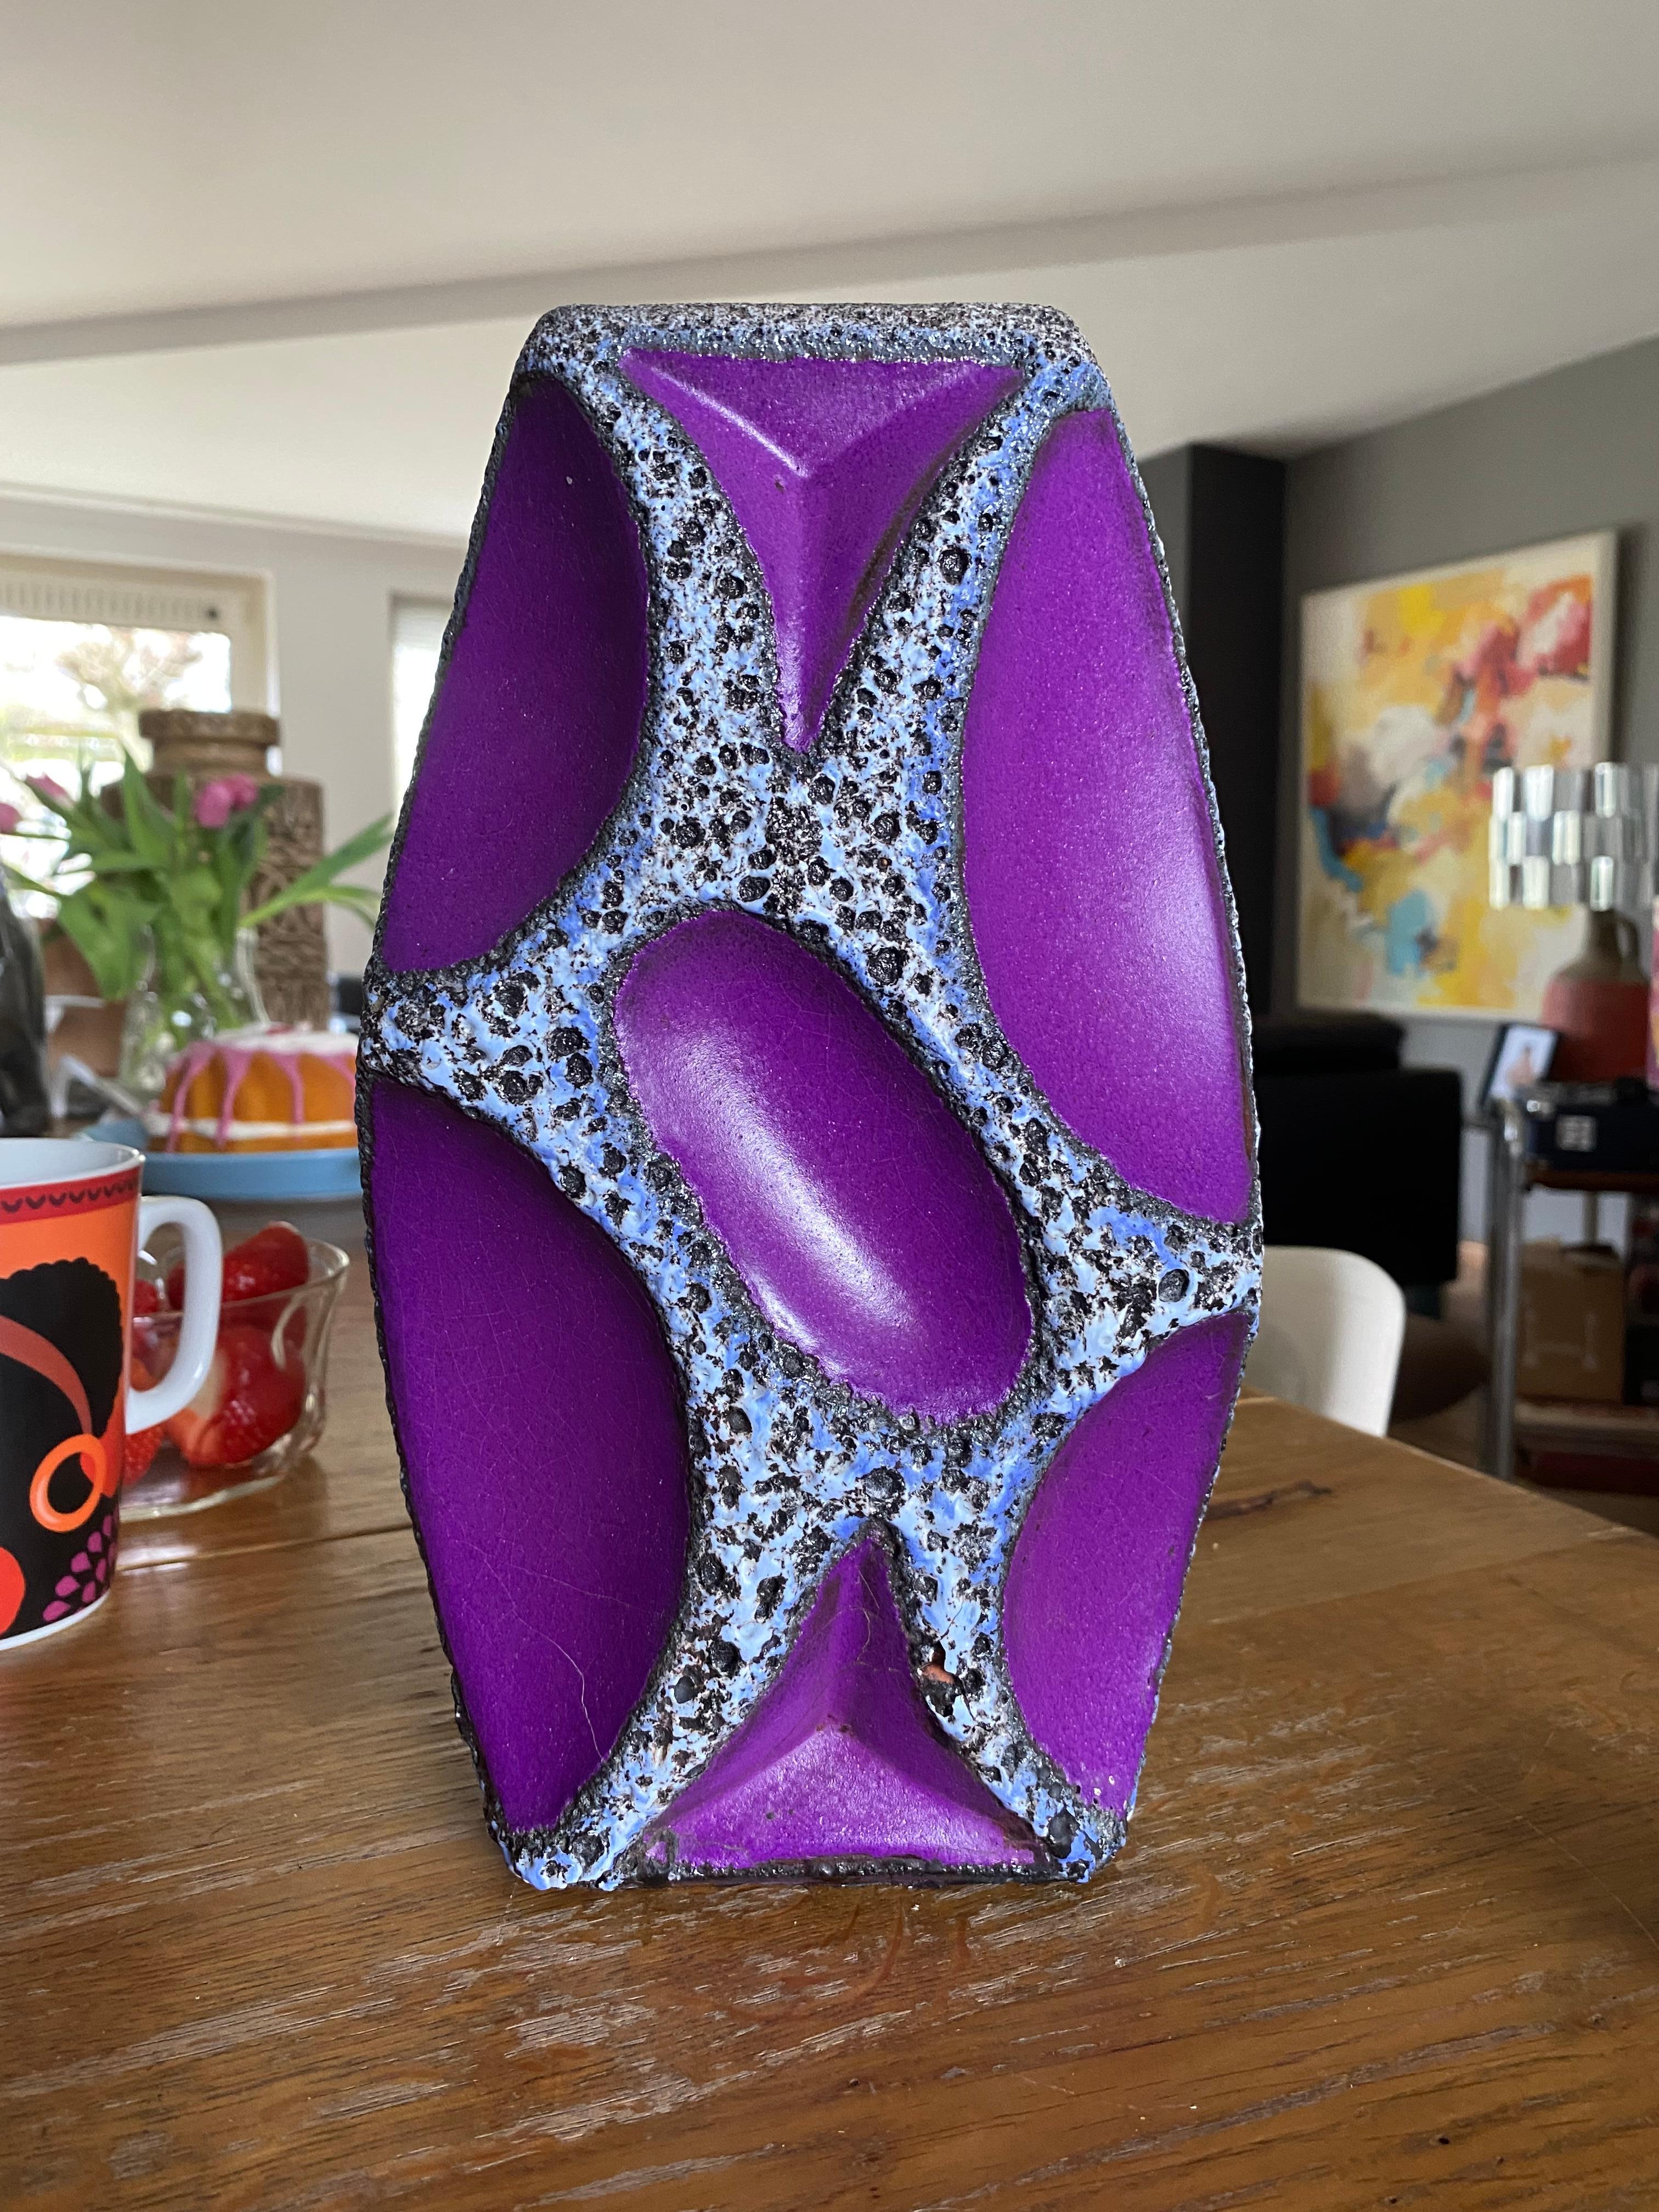 Un vase en céramique de Whiting, avec une lave aux contours bleus, blancs et noirs et une glaçure violette. Ces vases sont très recherchés, surtout dans les couleurs jaune et violet.

